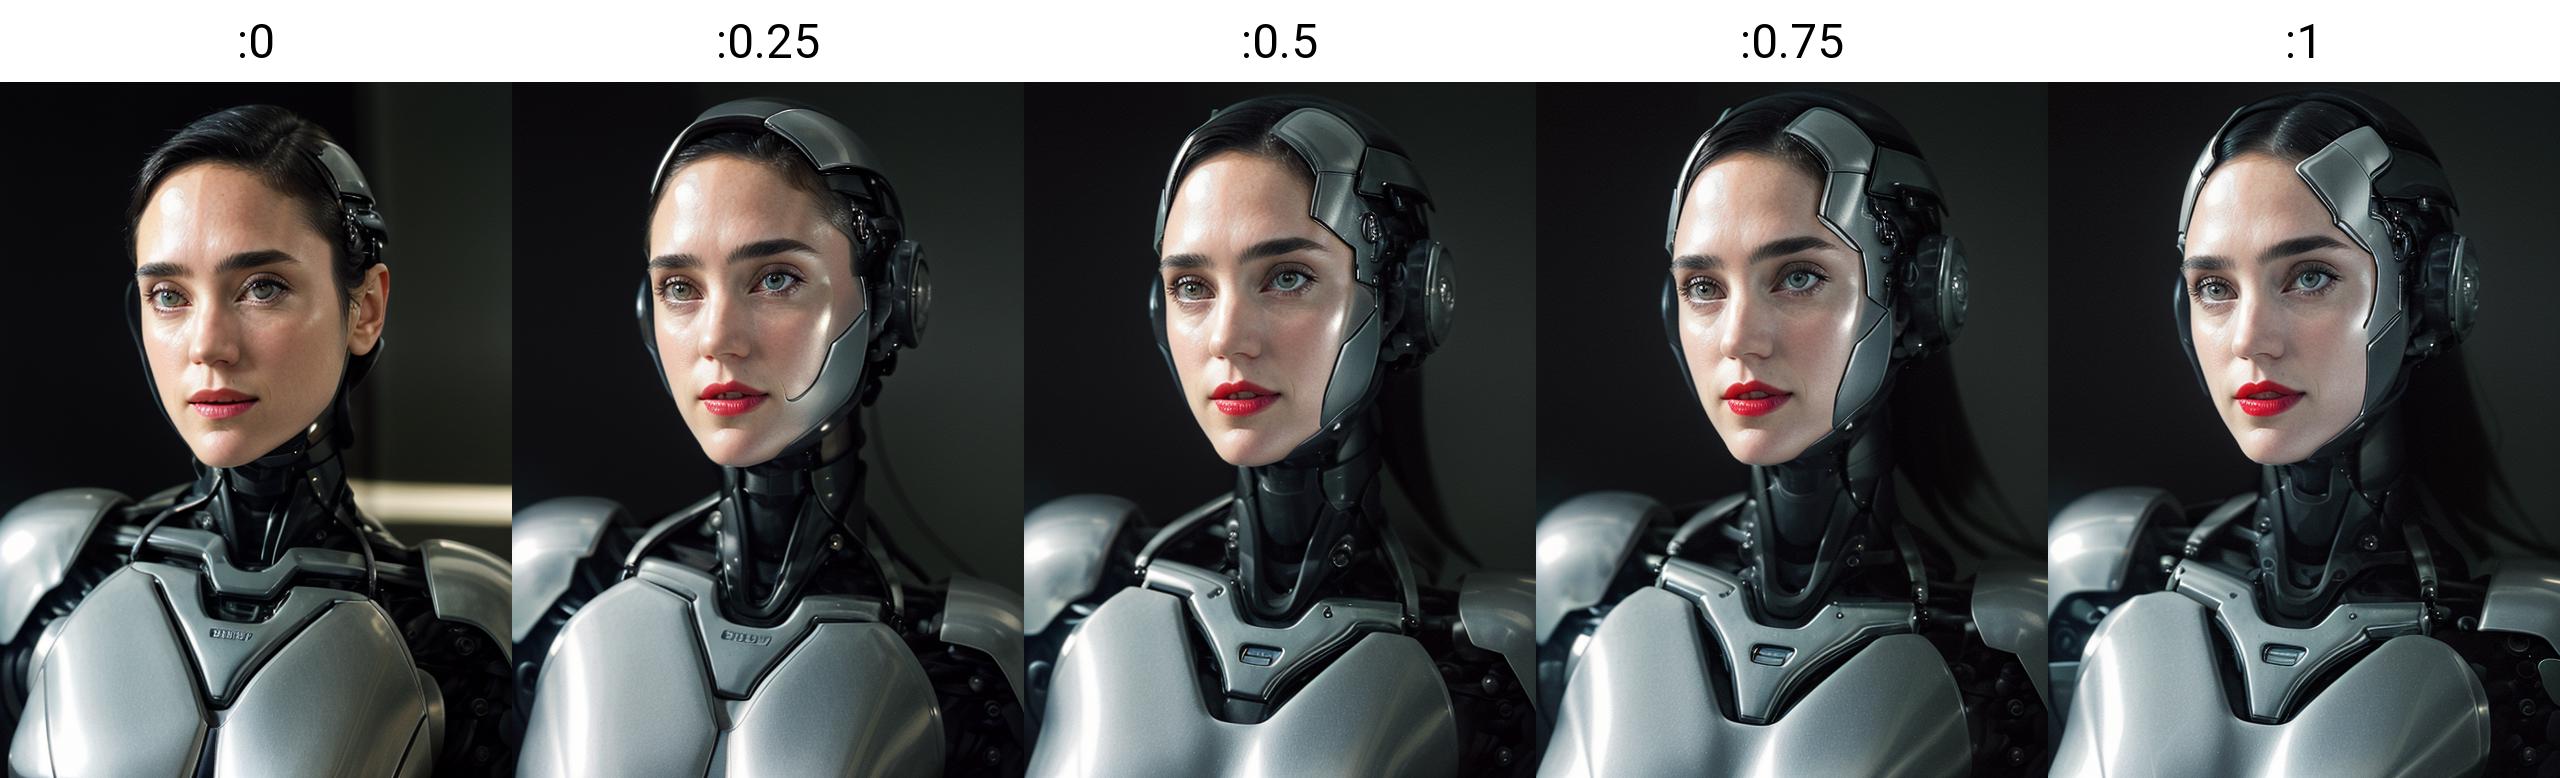 AI model image by Shurik